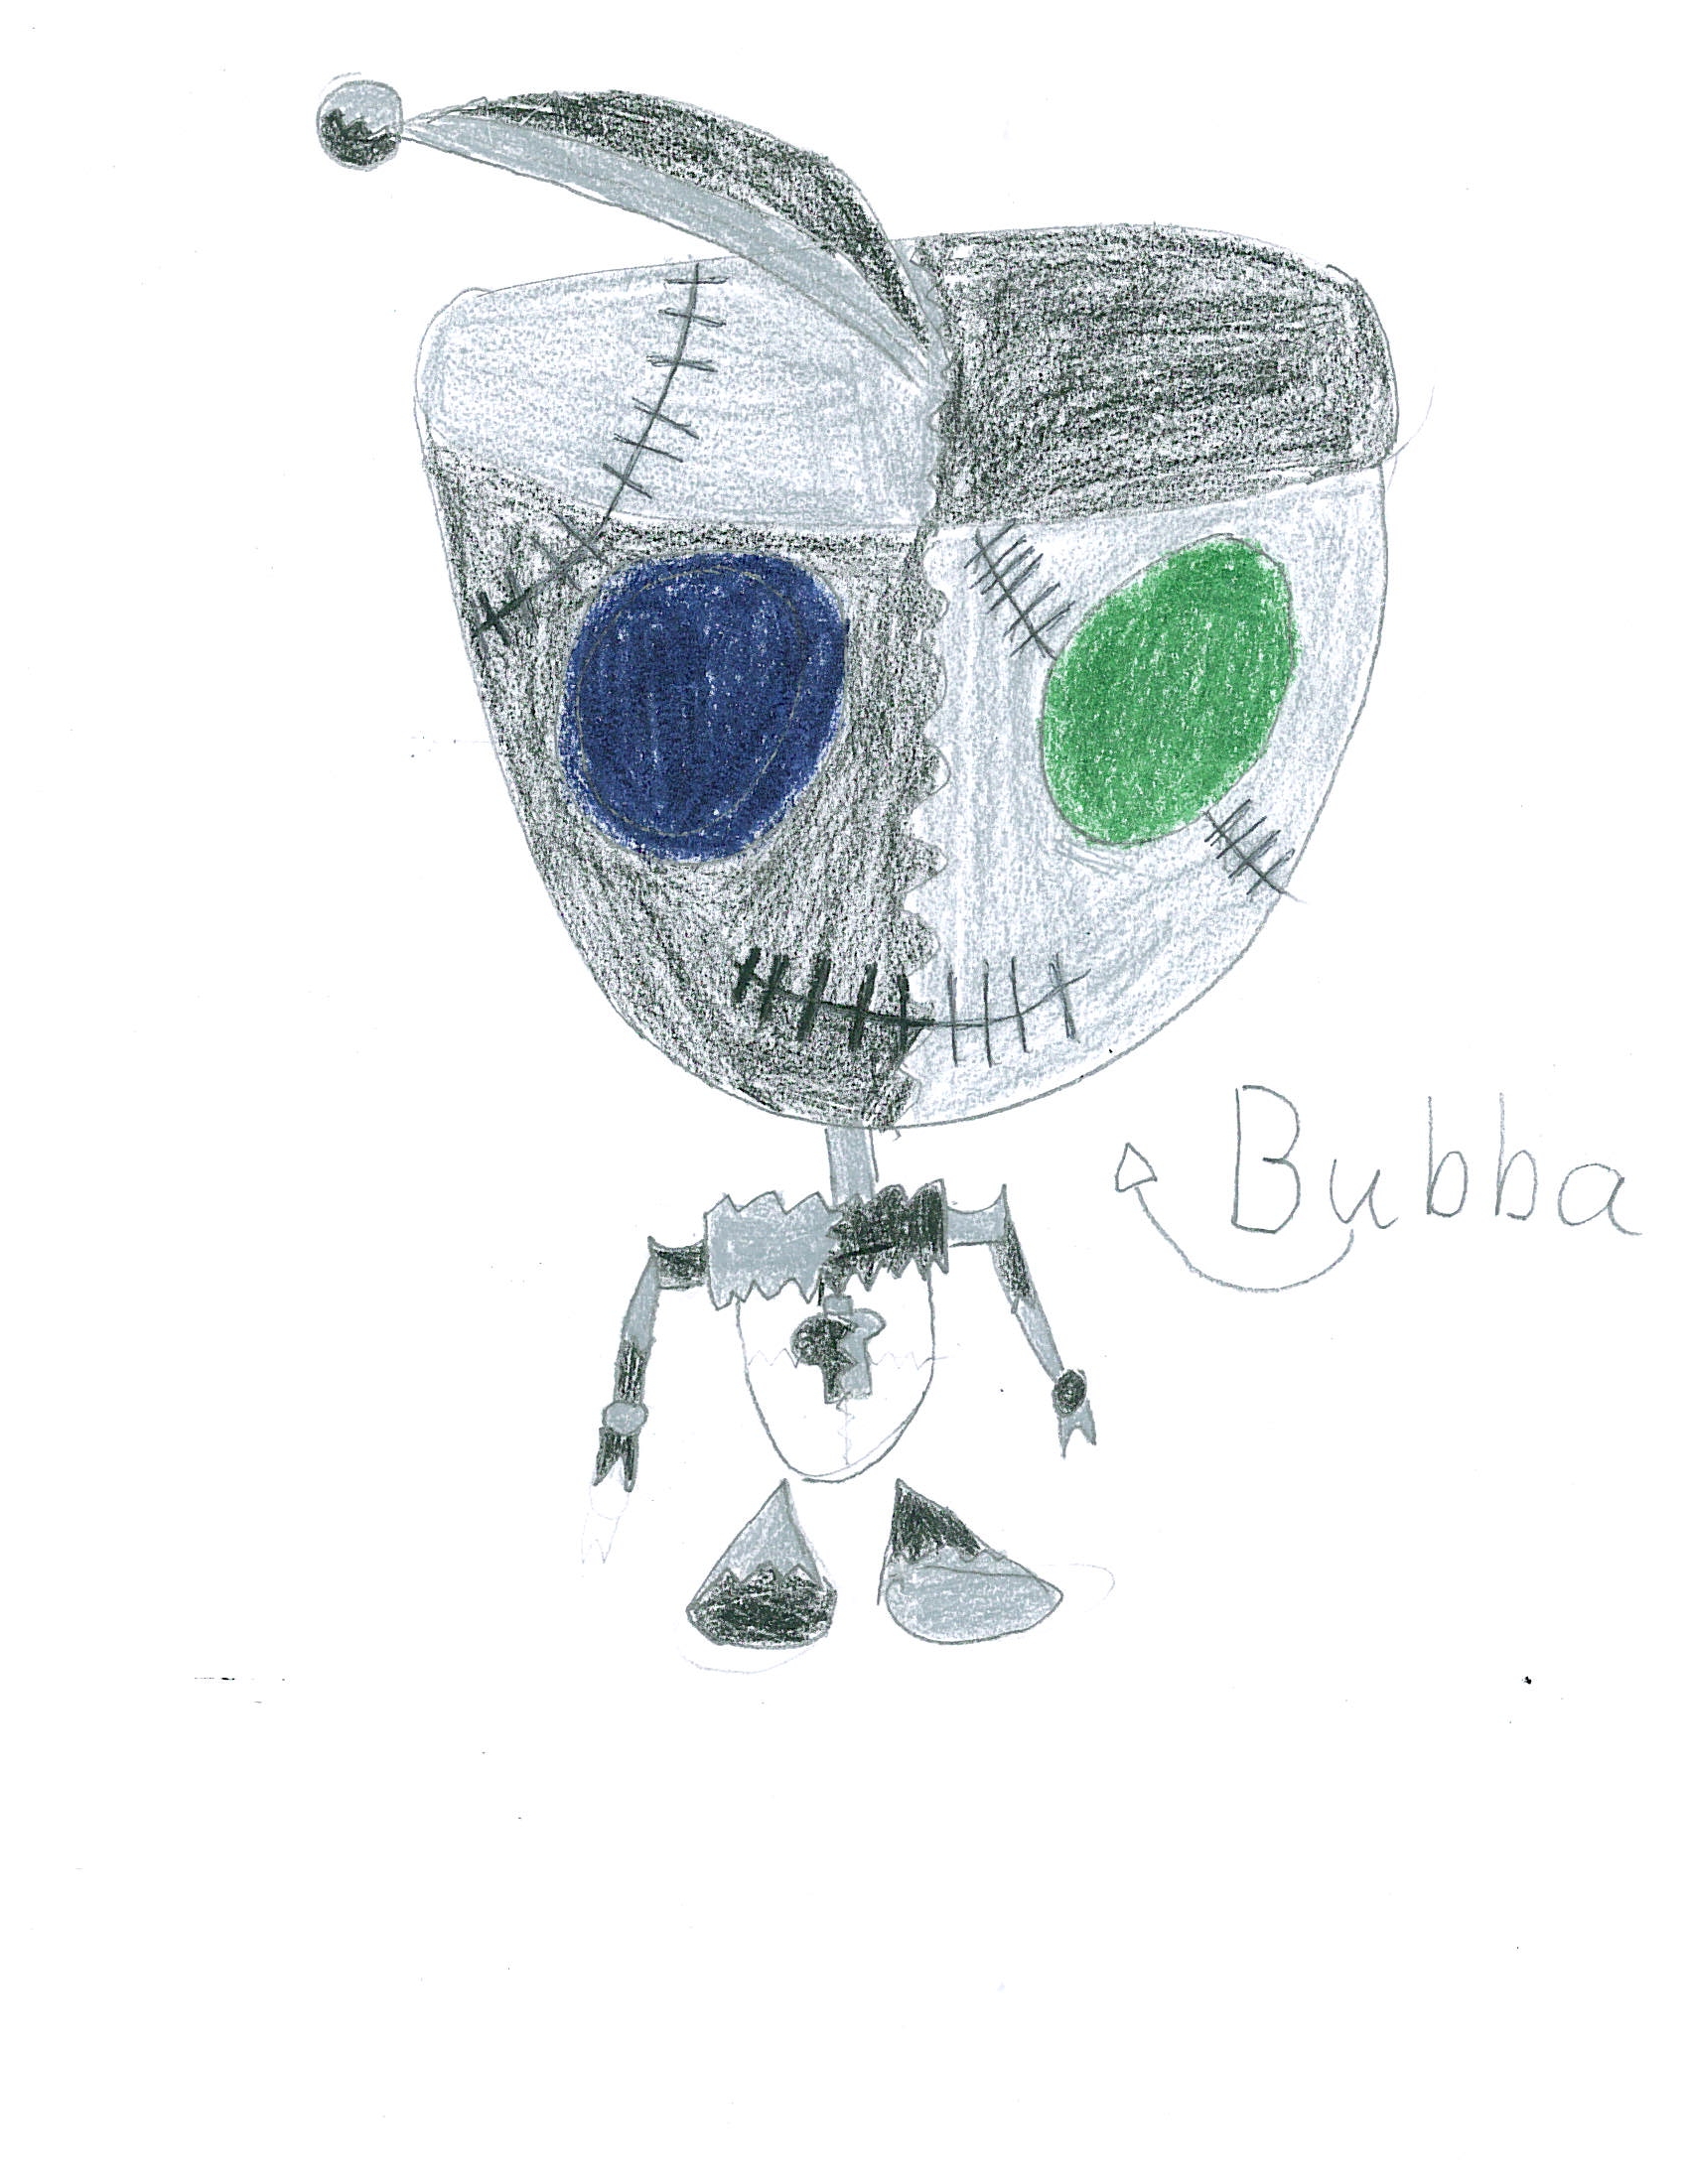 Bubba by boobear9396